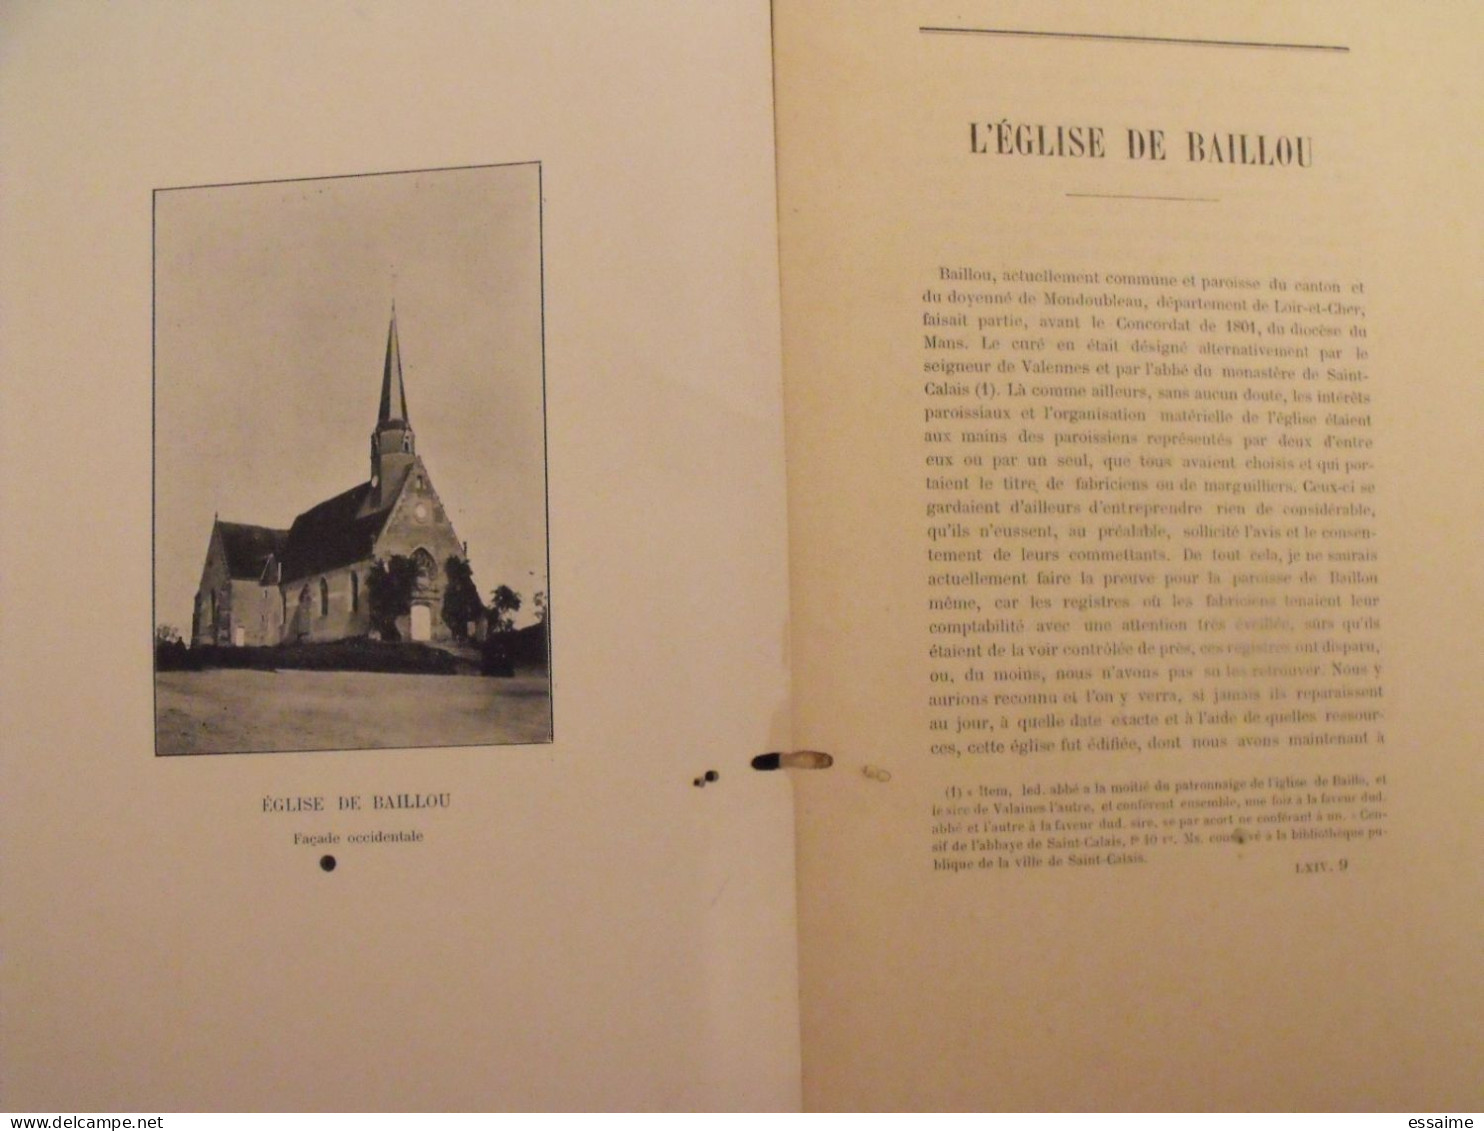 revue historique et archéologique du Maine. année 1908, 2ème semestre (2 livraisons). tome LXIV. Mamers, Le Mans